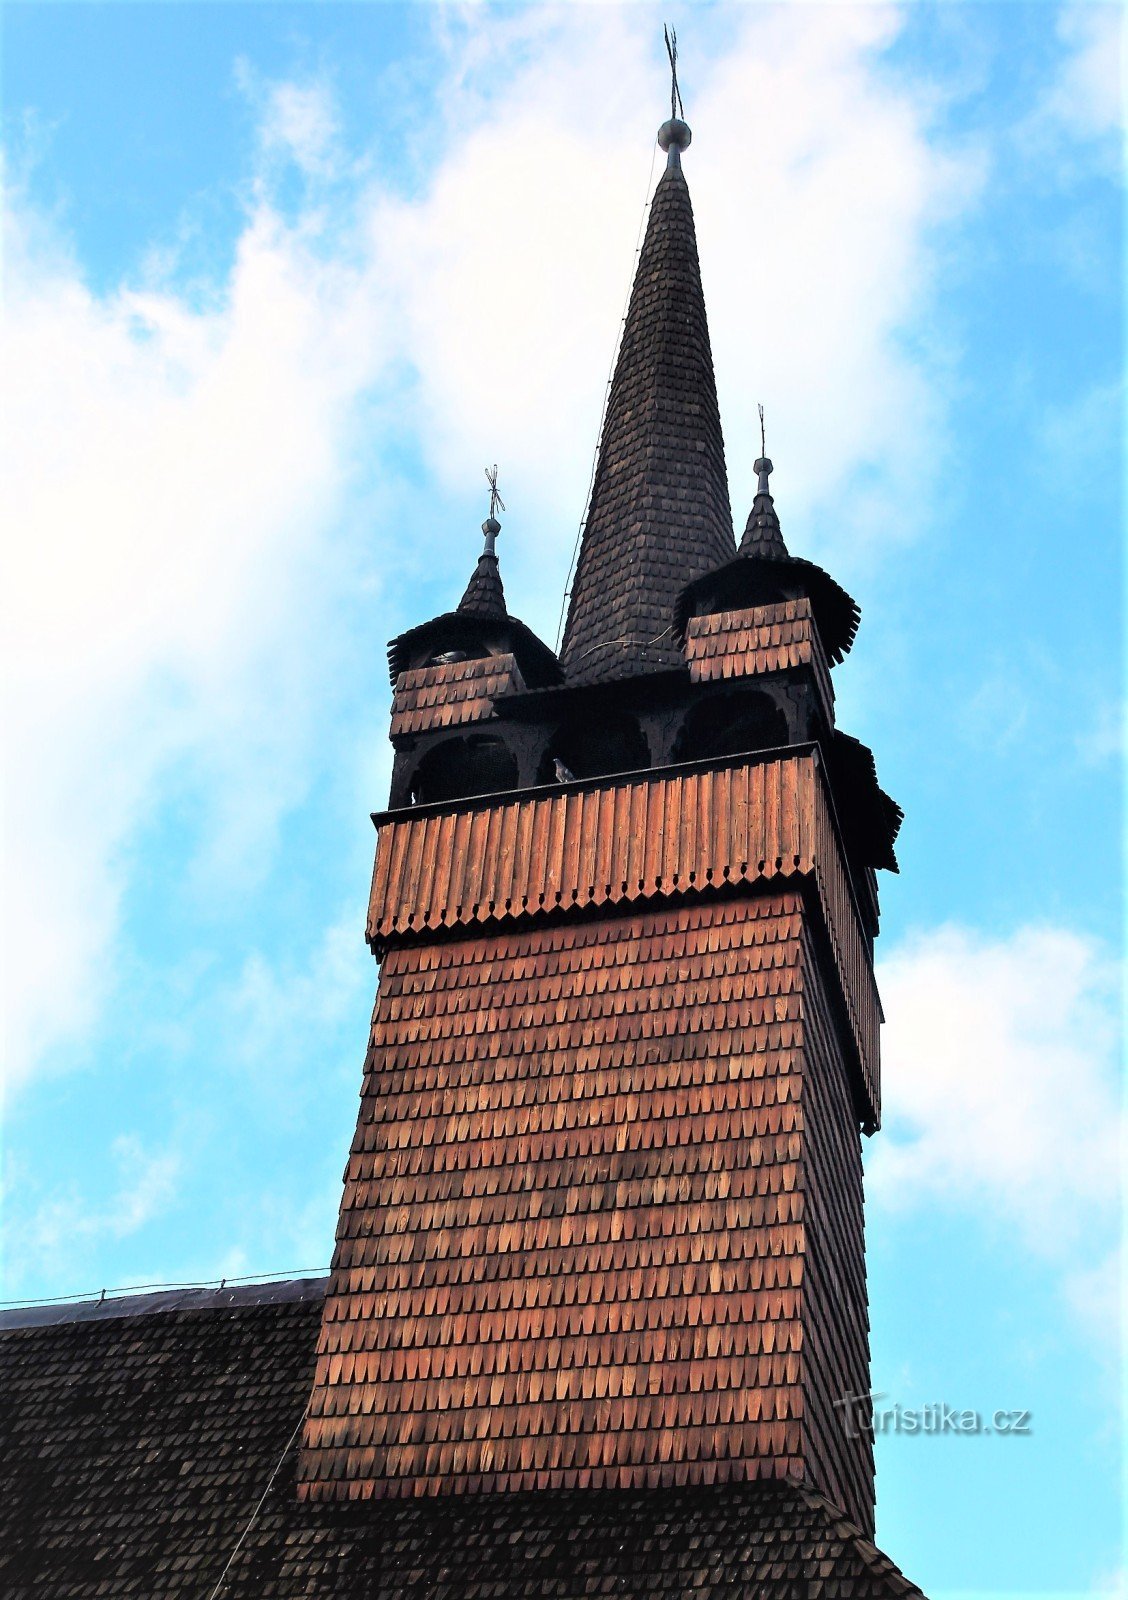 Ένας τετράπλευρος πύργος εκκλησίας με κωνική στέγη με τέσσερις γωνιακούς πυργίσκους